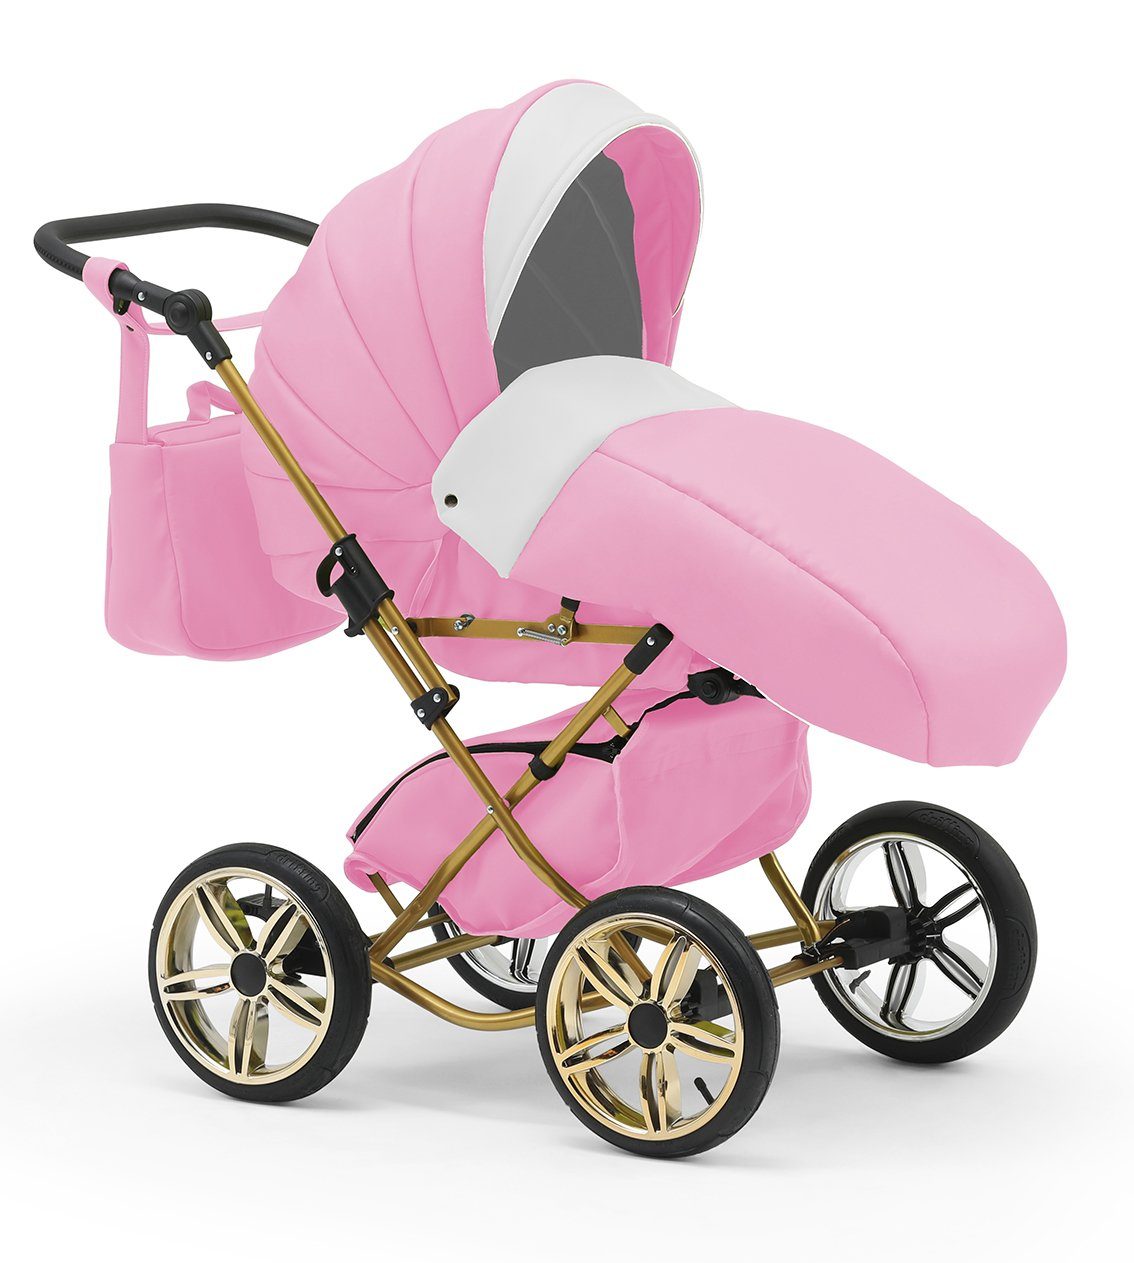 babies-on-wheels Kombi-Kinderwagen Designs in 1 in 14 4 und Base 10 - Iso inkl. Teile - Autositz Rosa-Weiß Sorento